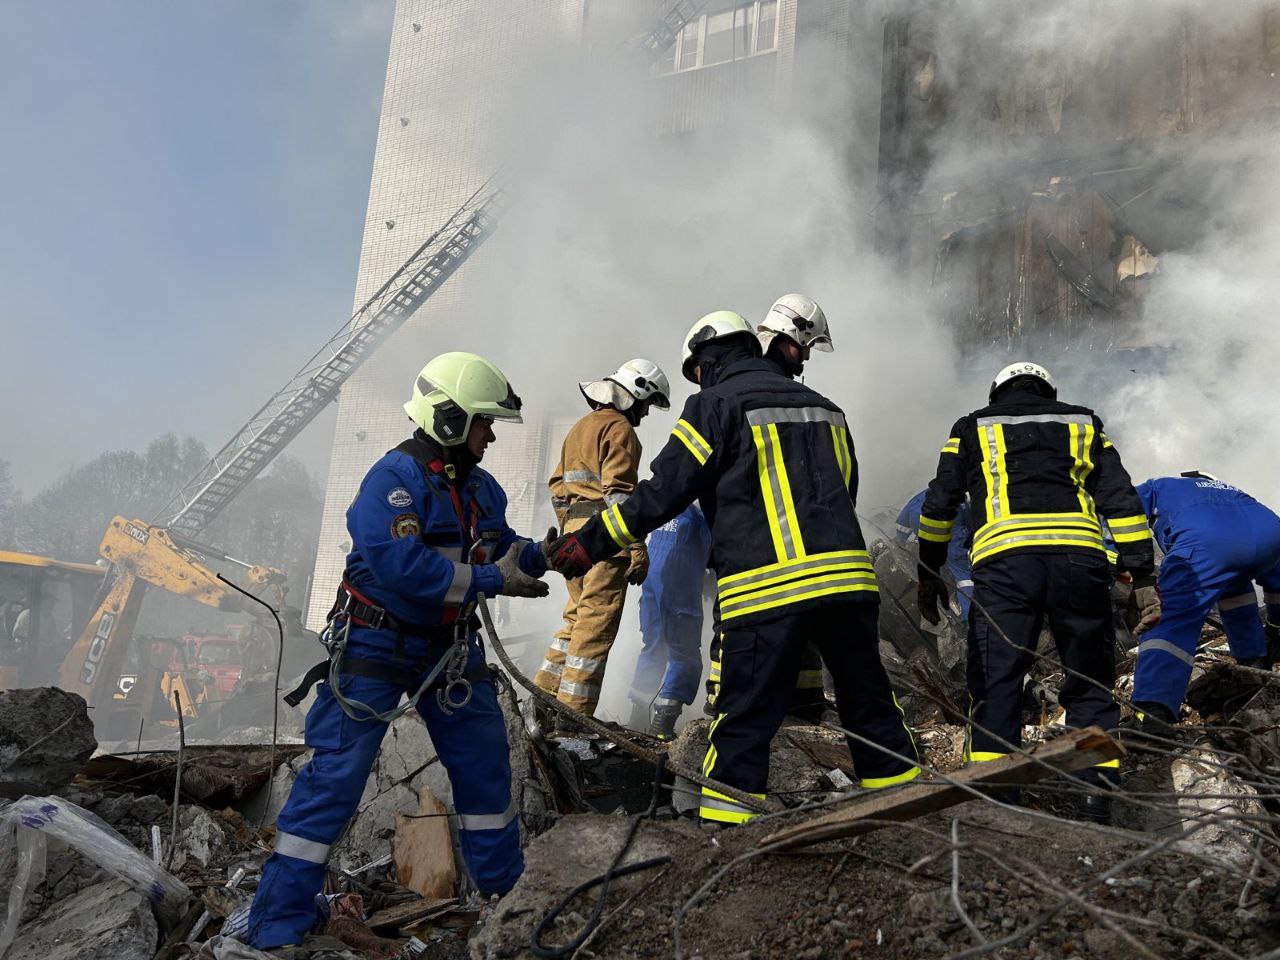 Ракетний удар по Умані пошкодив близько 10 багатоквартирних будинків. Під завалами залишаються люди.